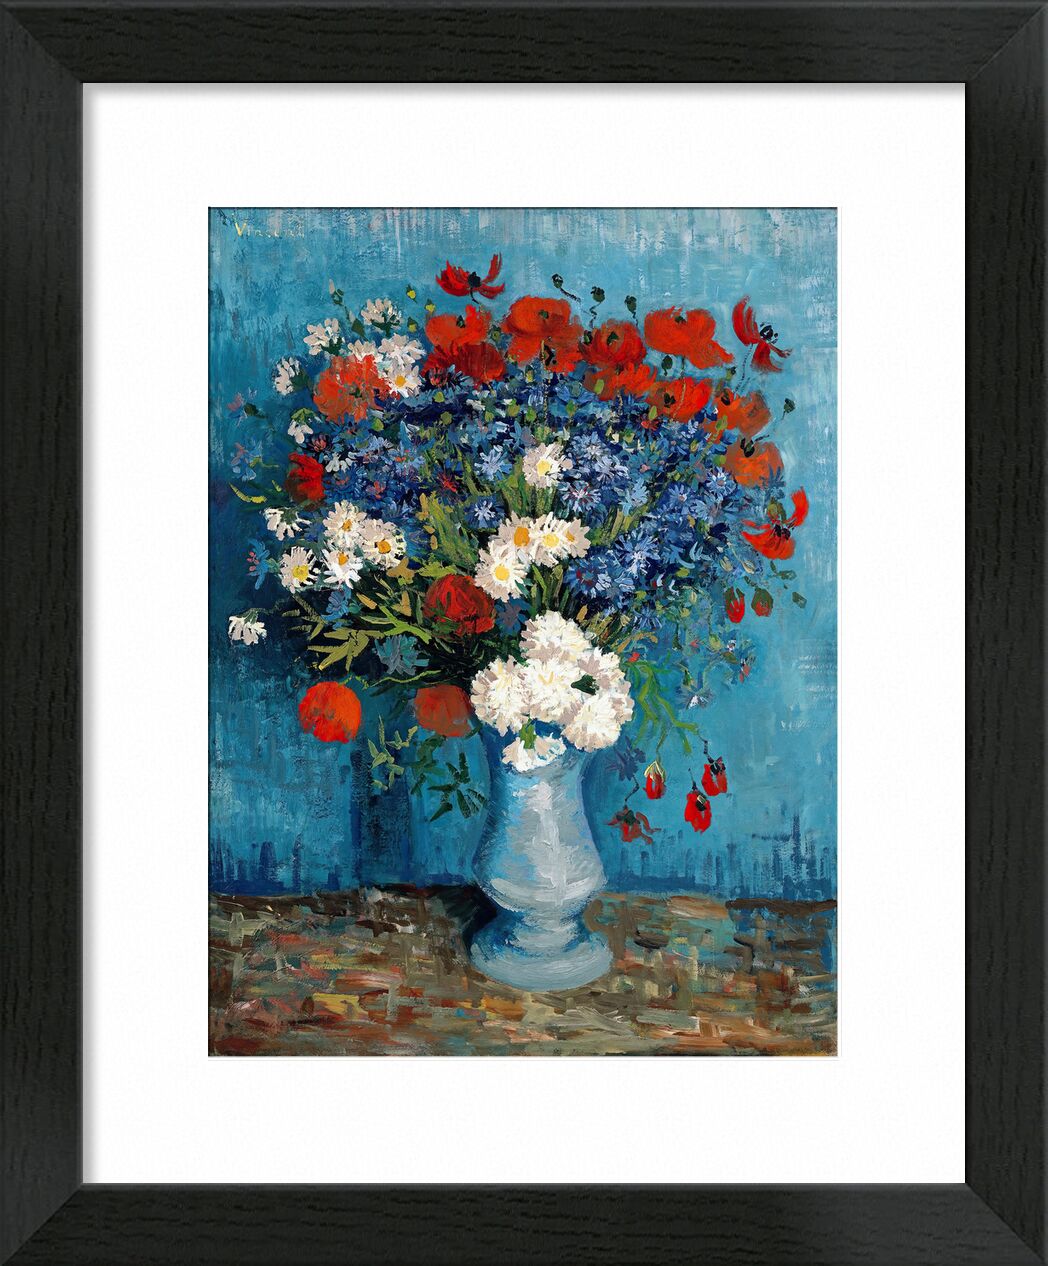 Still Life: Vase with Cornflowers and Poppies - Van Gogh desde Bellas artes, Prodi Art, Van gogh, bodegón, pintura, amapolas, arándanos